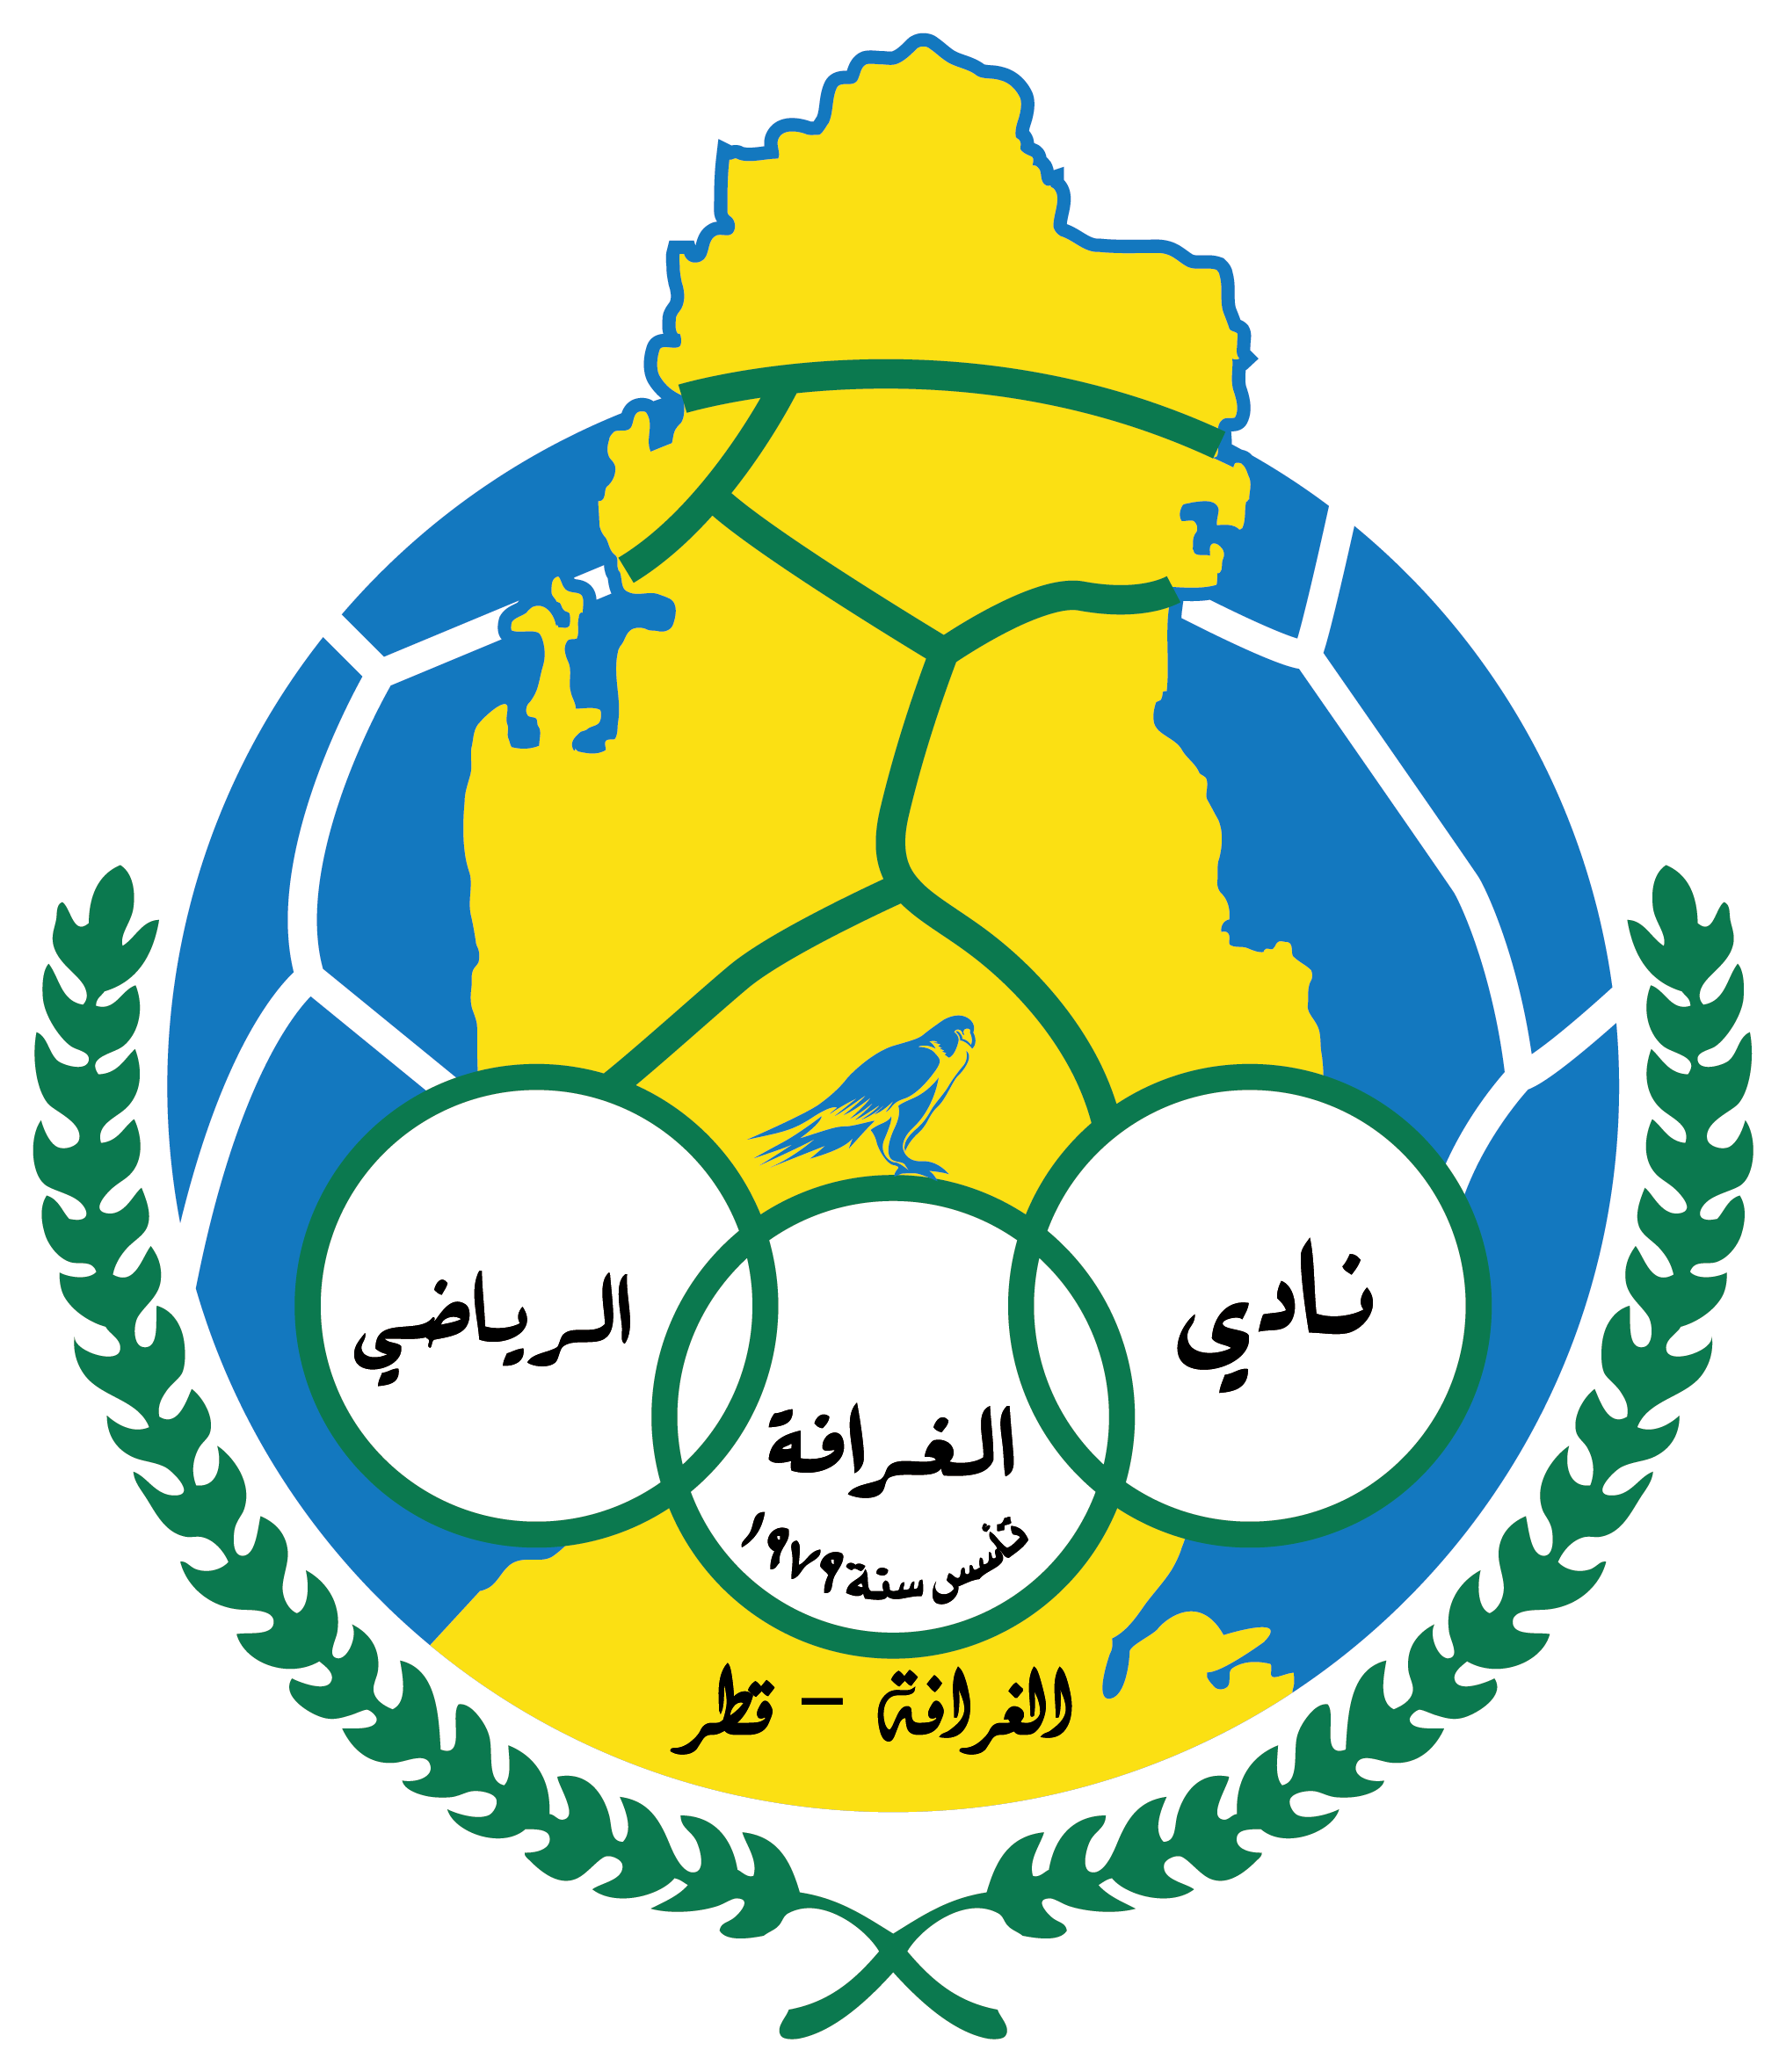 阿爾加拉法足球俱樂部